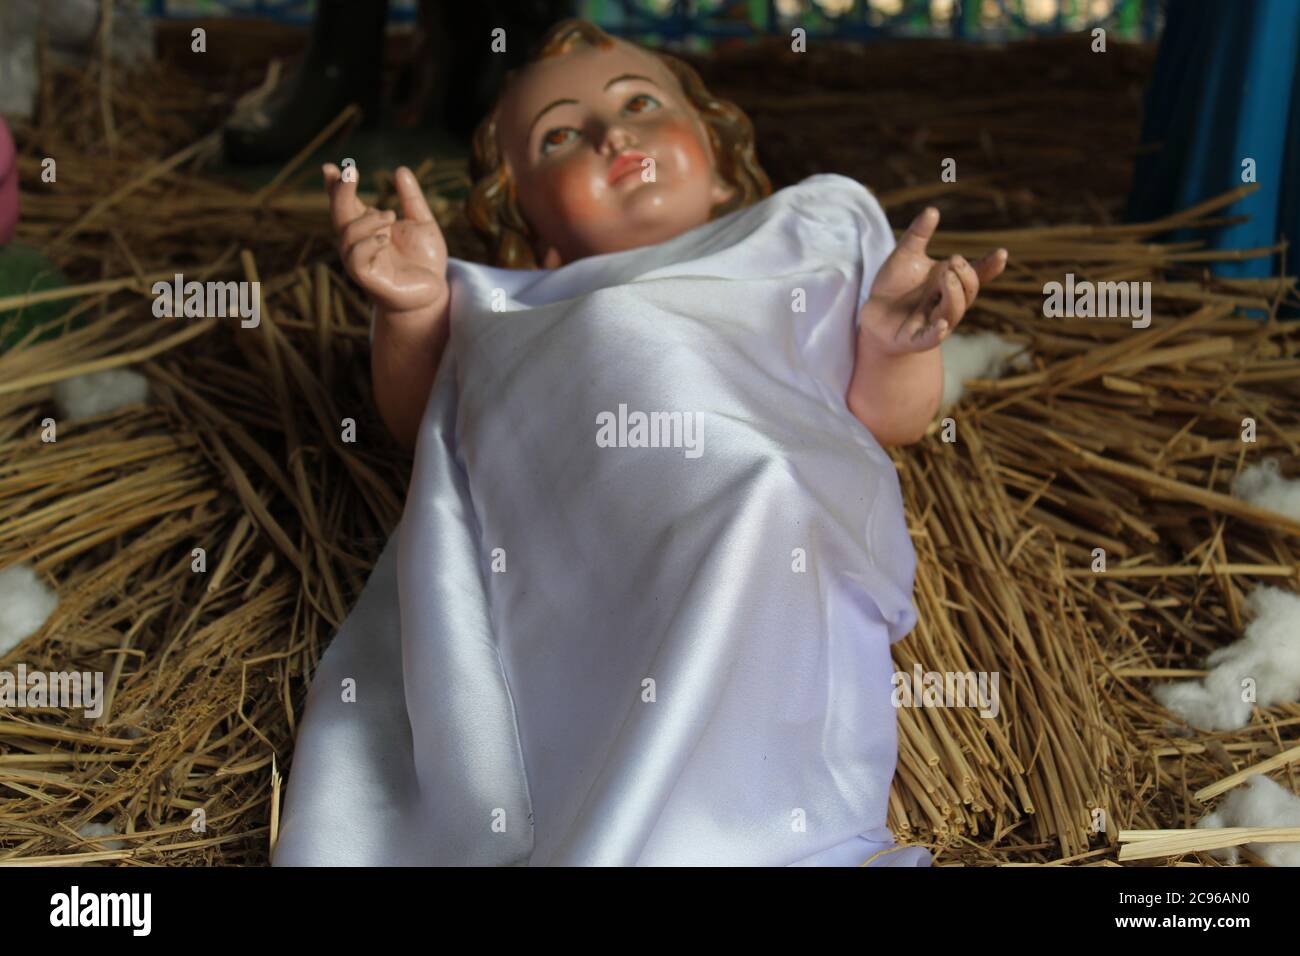 Kolkata, Westbengalen/Indien - 29. Dezember 2019: Ein Modell der Geburt Jesu in einem Stall in Bethlehem. Dummy Menschenmodell Statue mit s Stockfoto